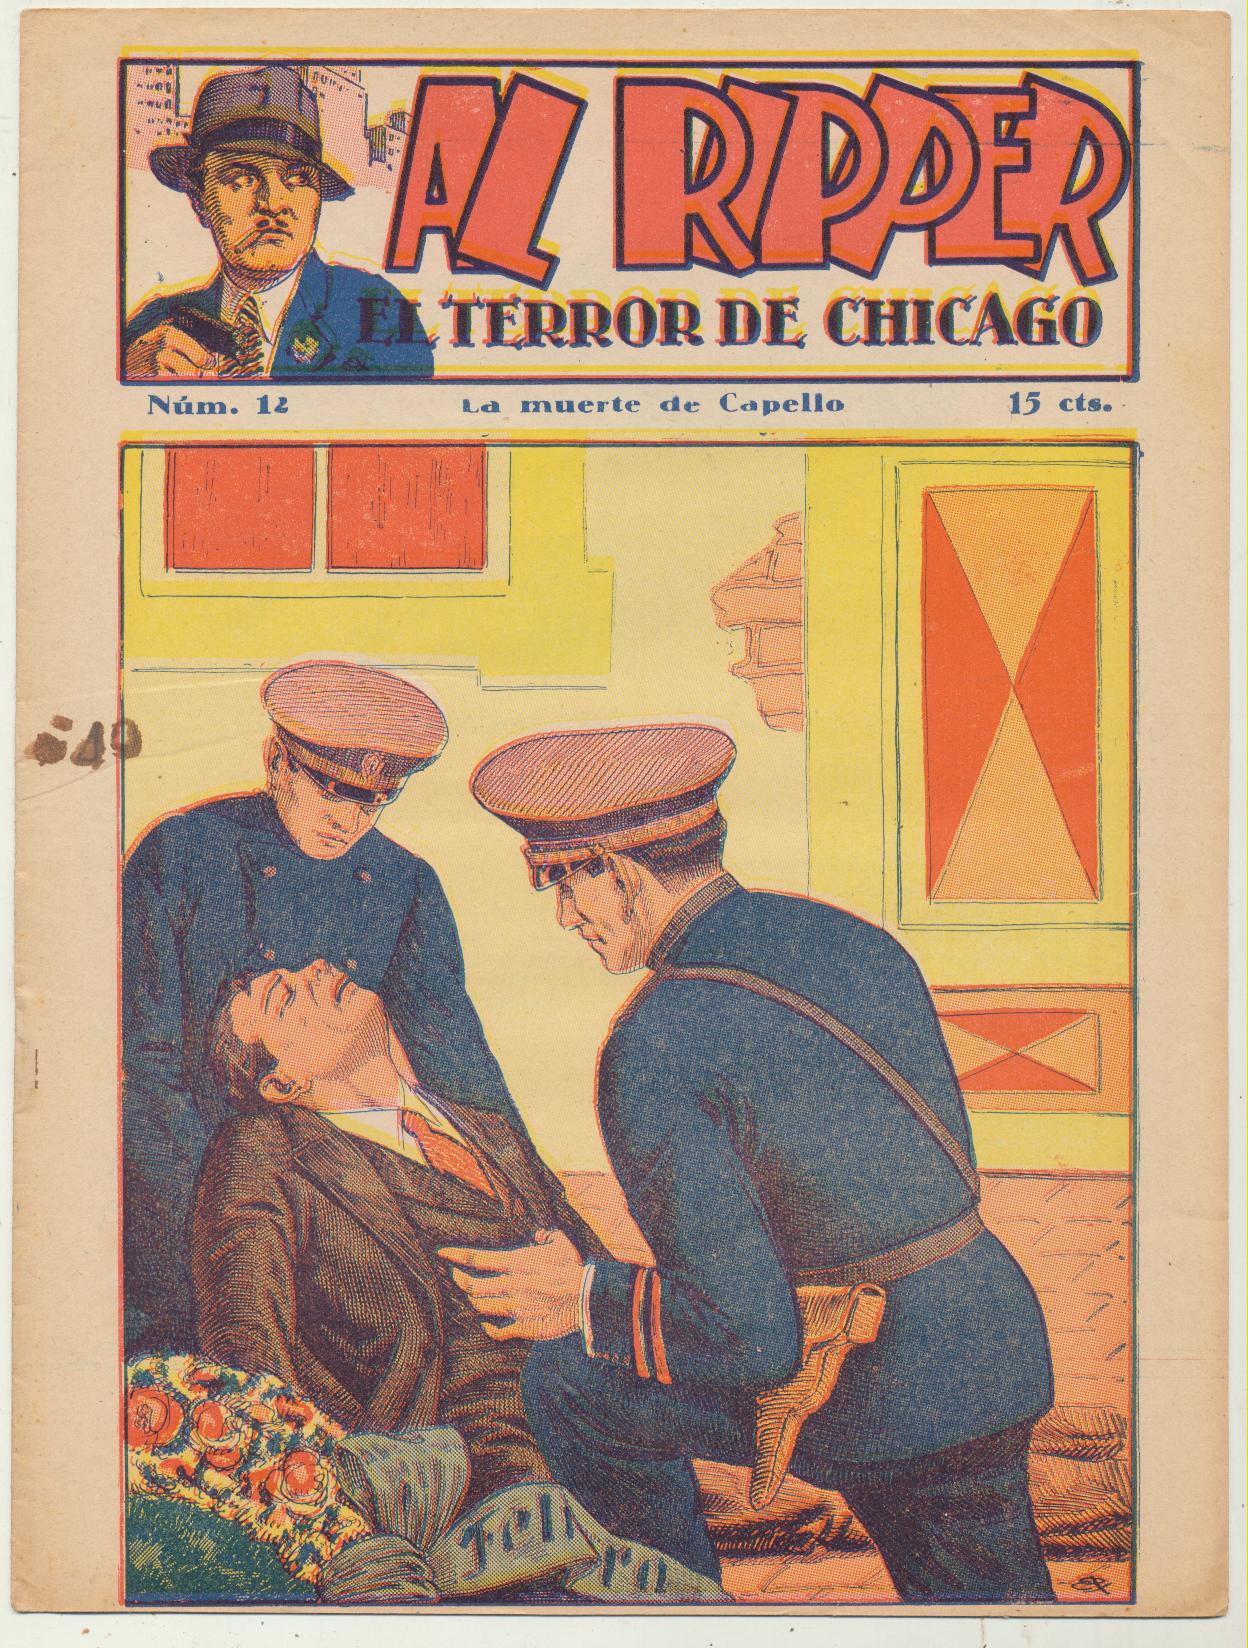 Al Ripper, El terror de Chicago nº 12. Últimos de la colección. Editorial Sanxo años 20